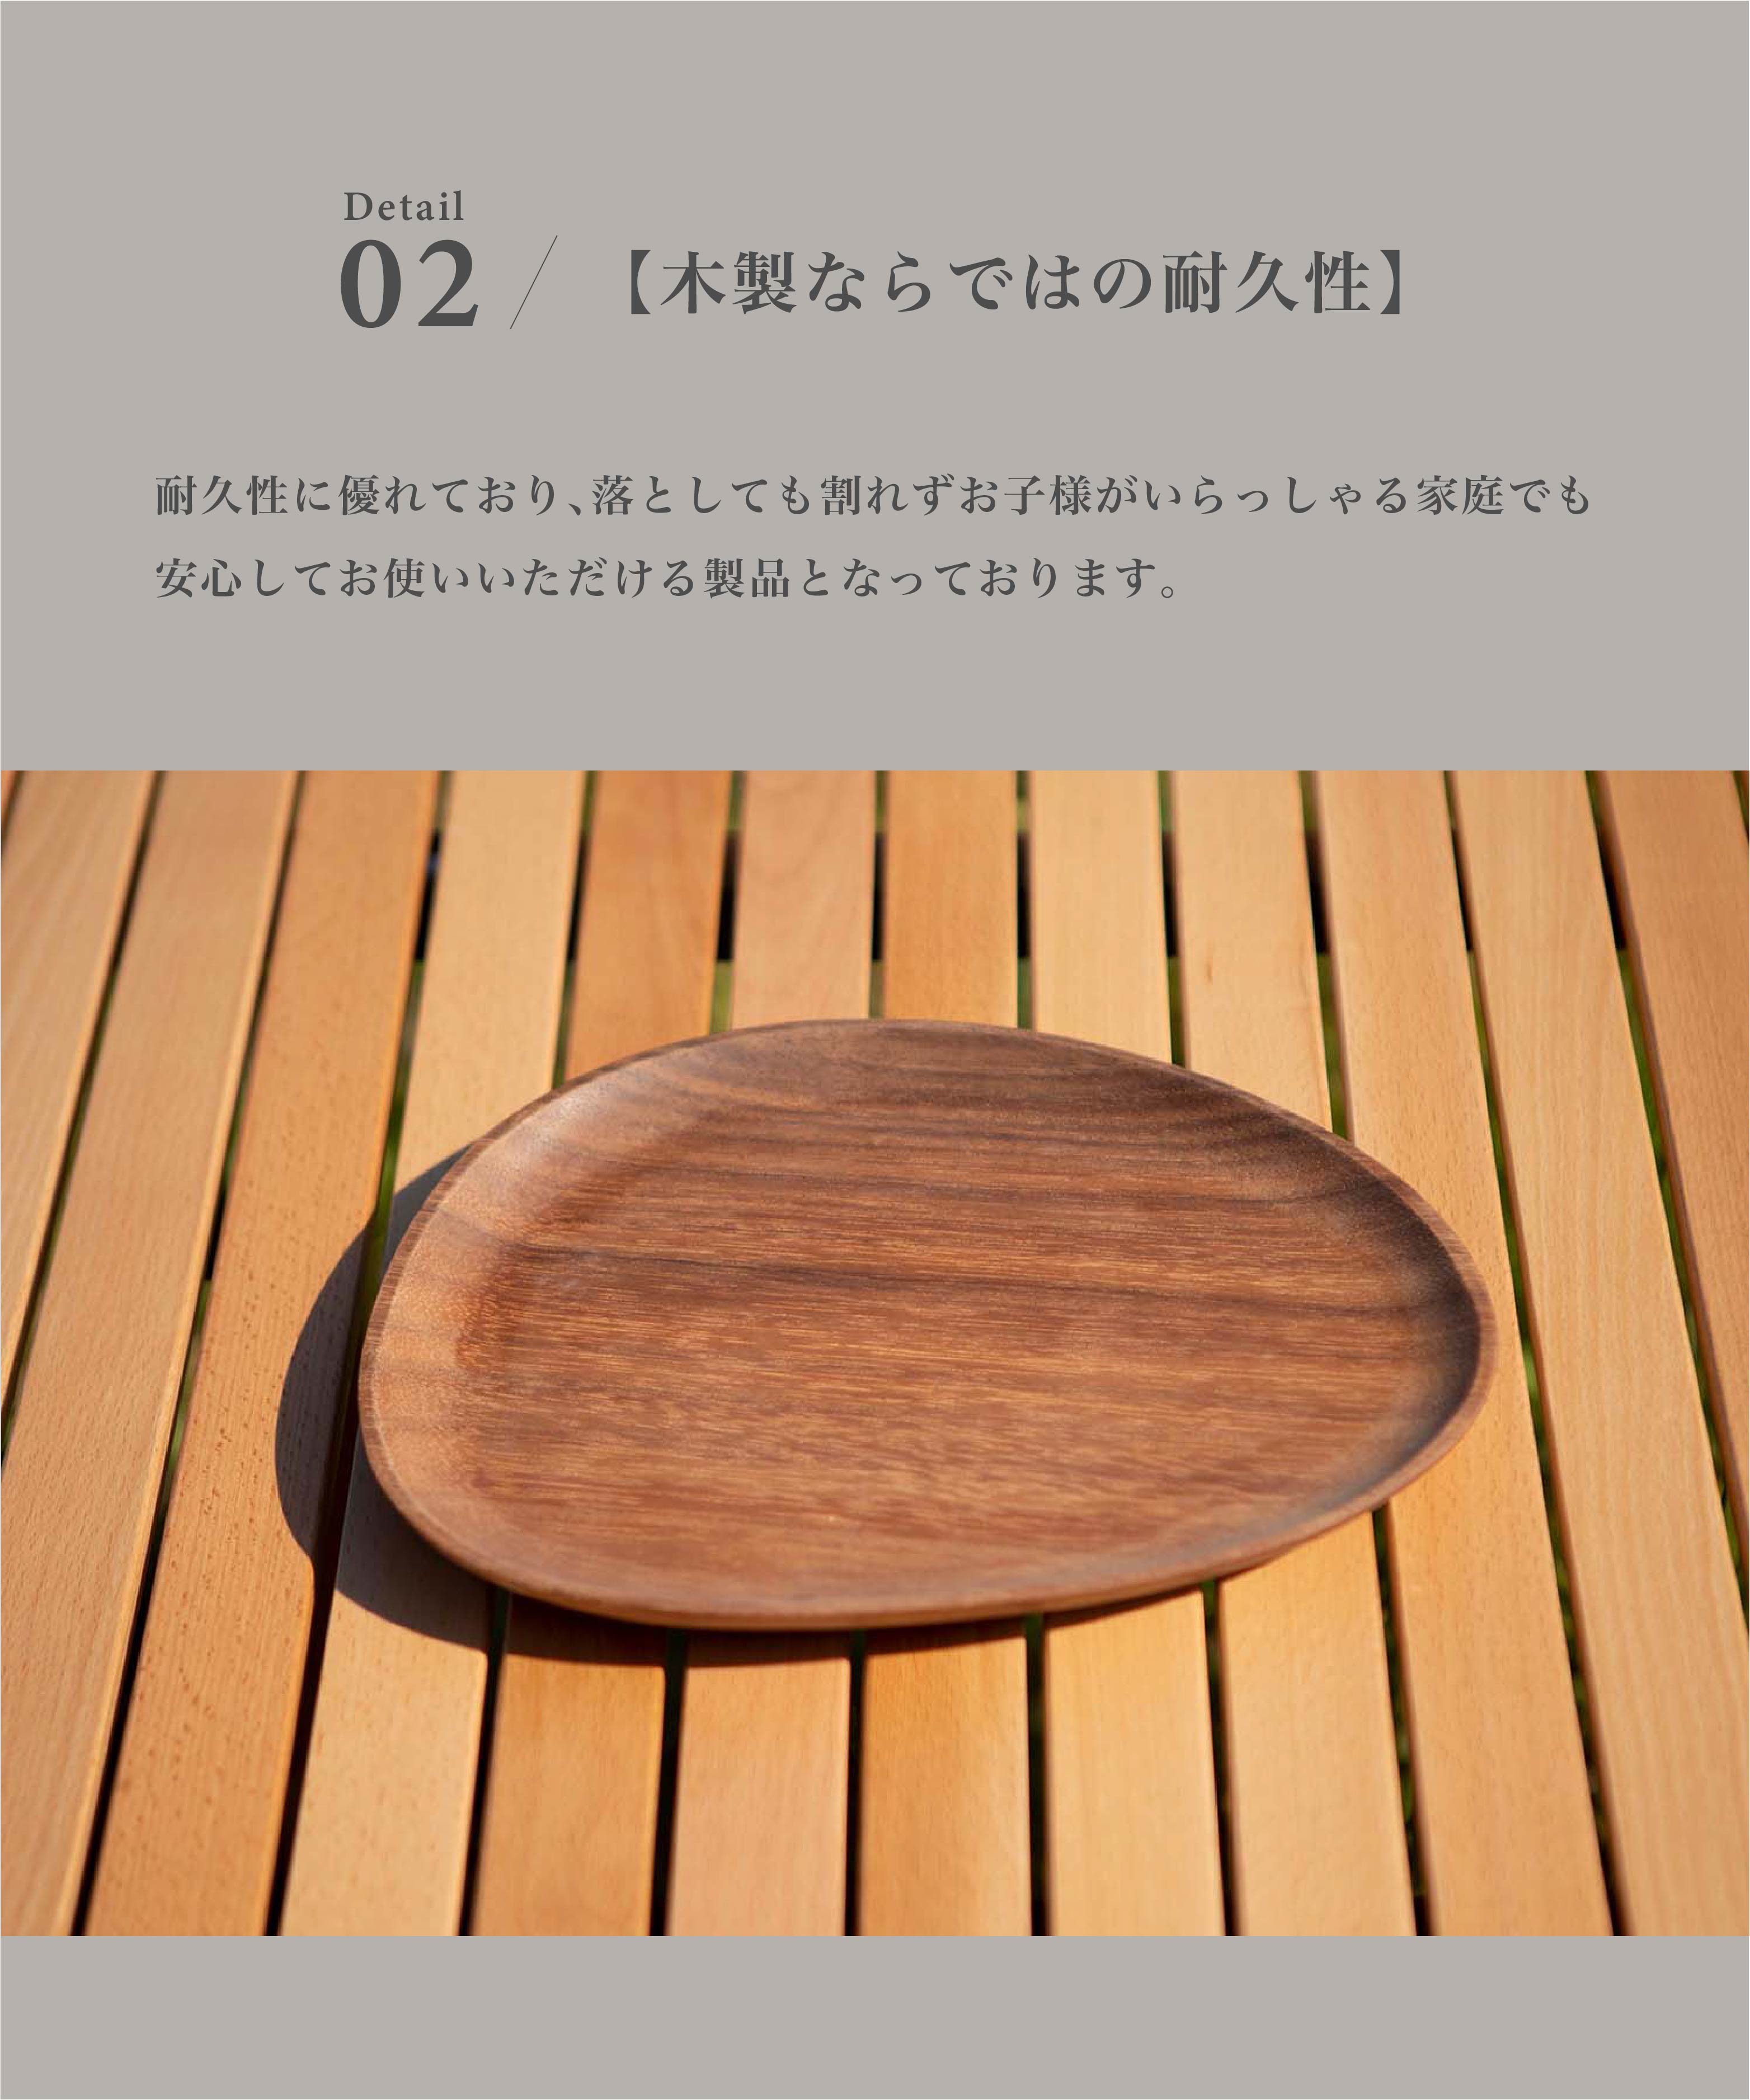 スモア Woodi plate 26*21